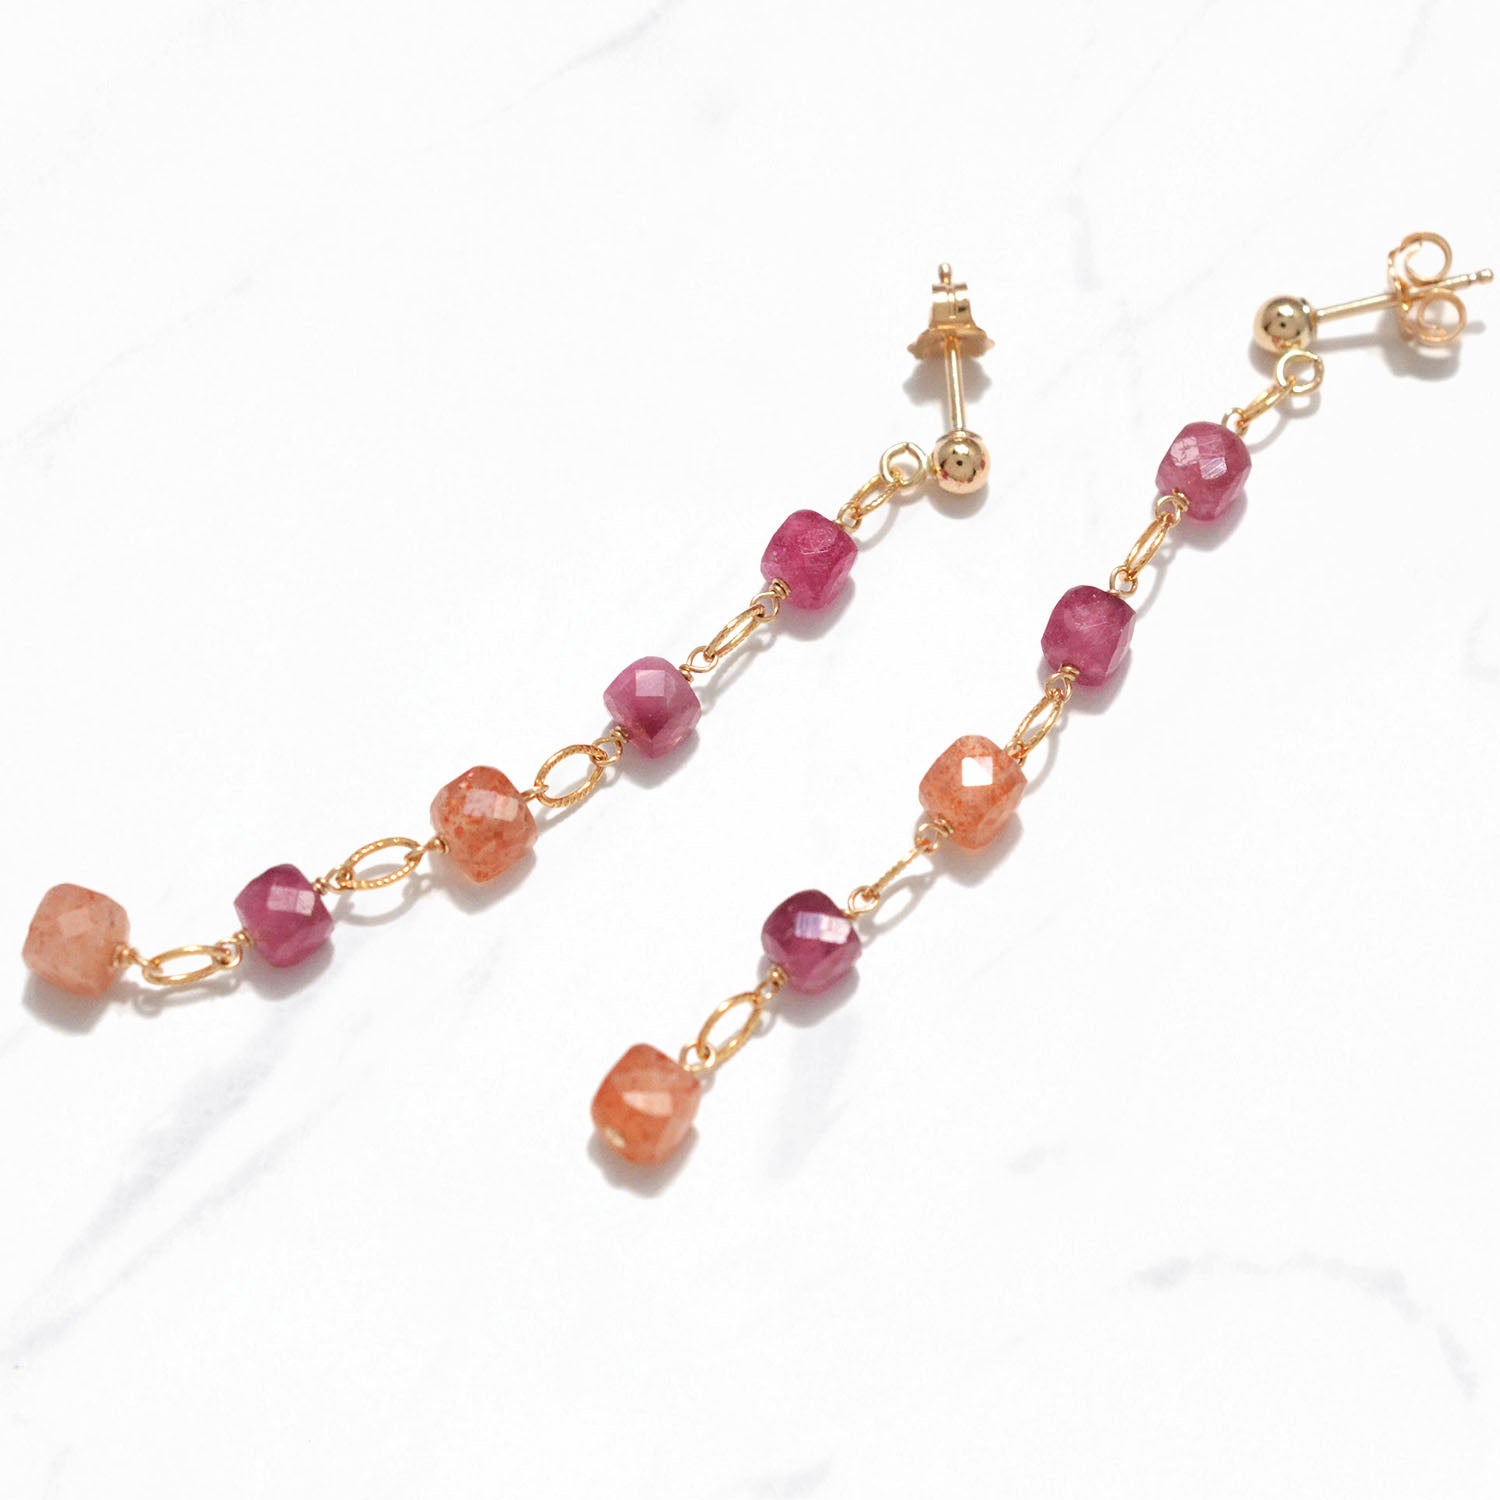 Colorful Gemstones Dangling Earrings (Berries)